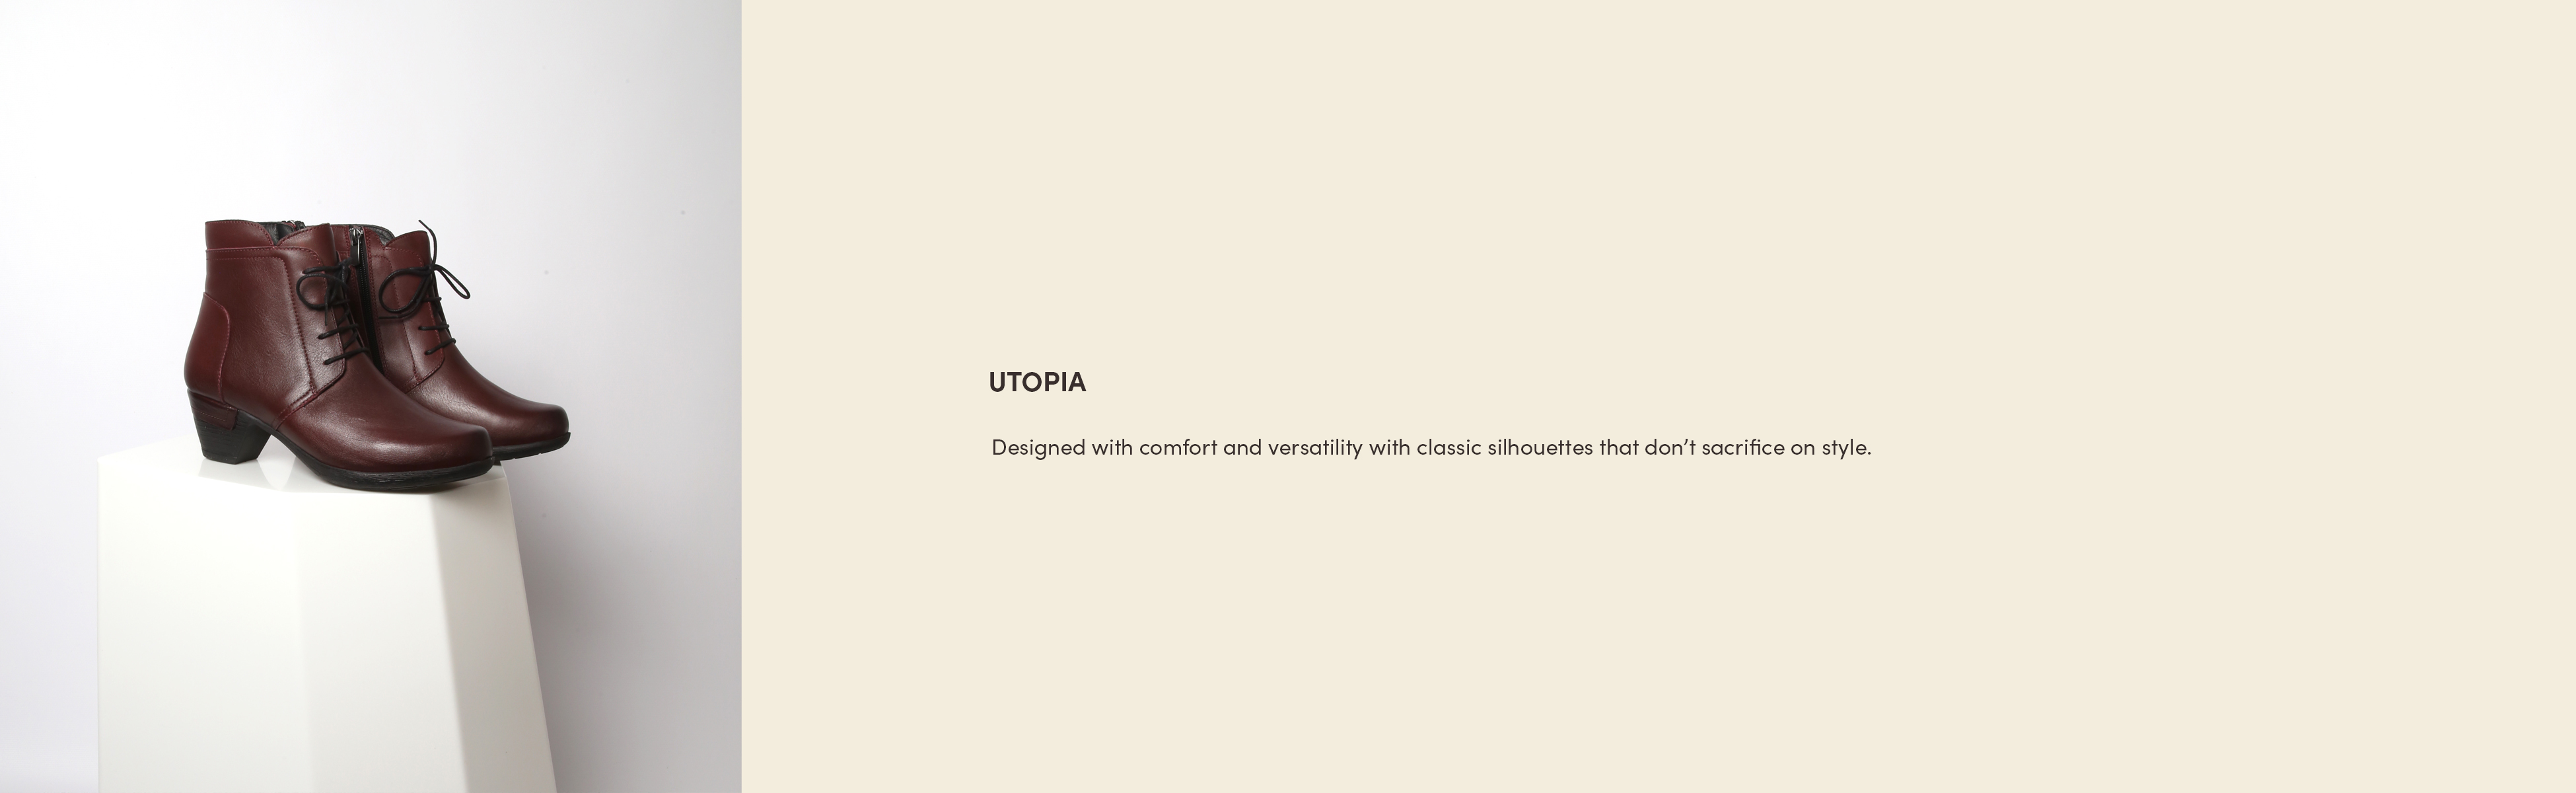 Utopia_banner